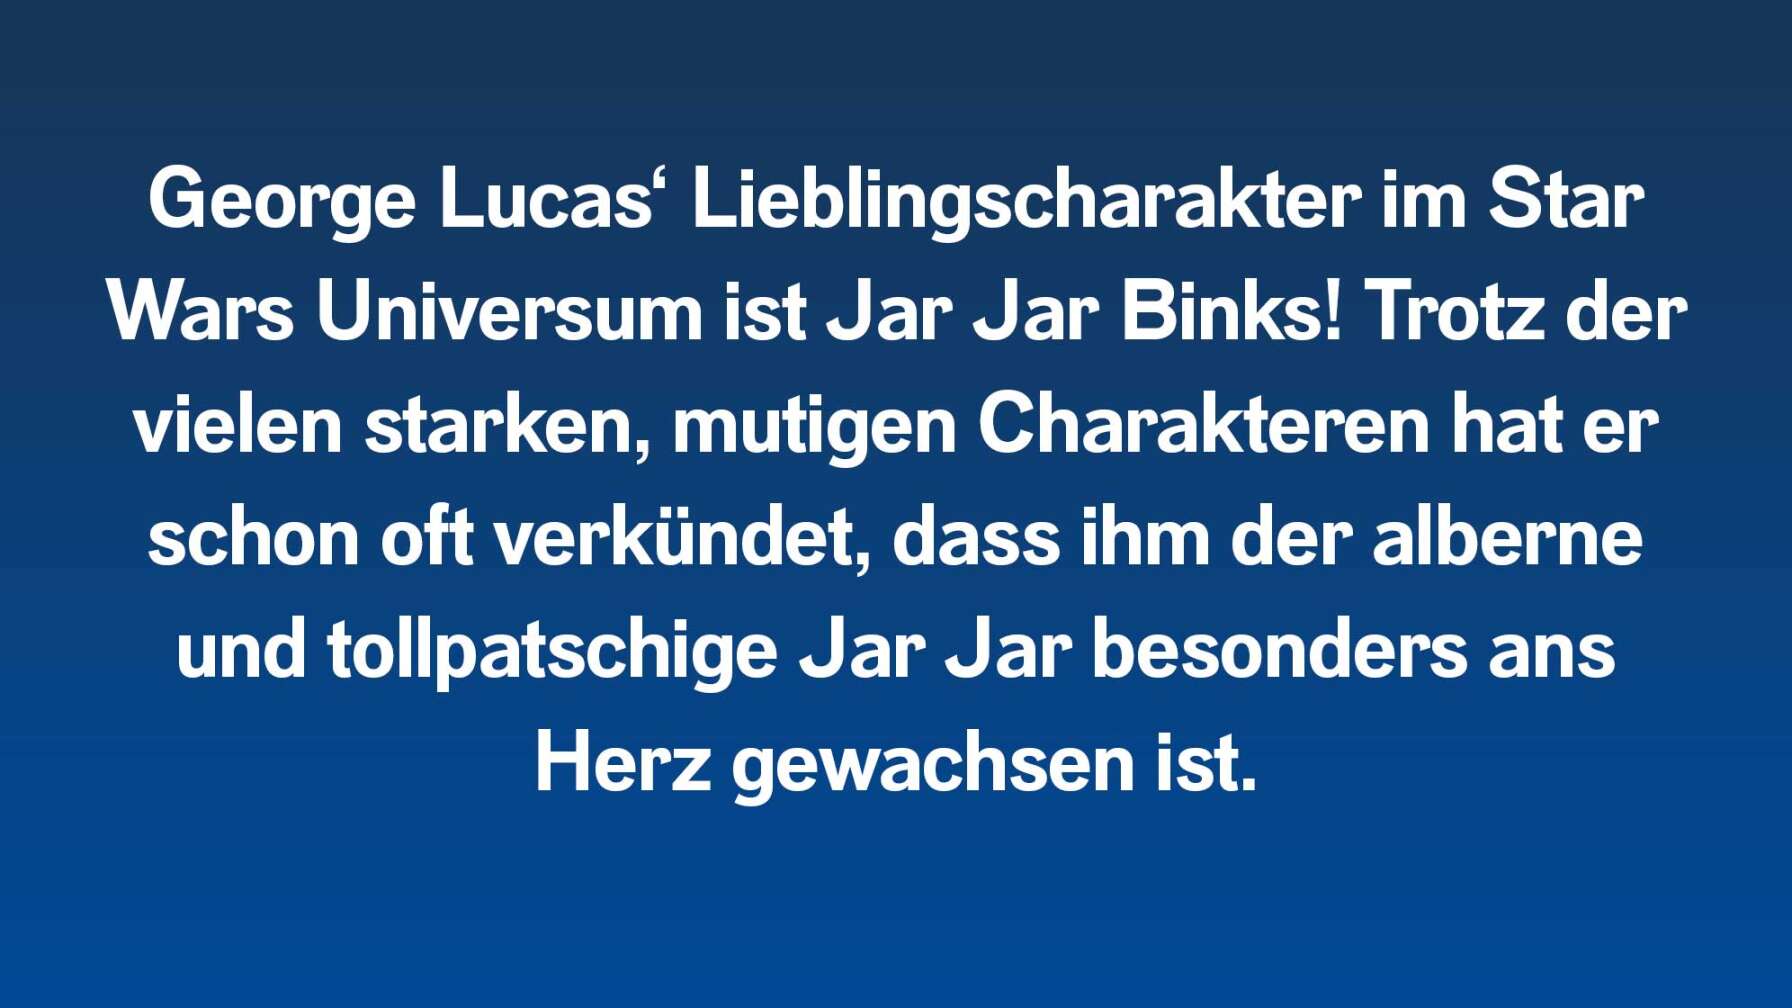 George Lucas‘ Lieblingscharakter im Star Wars Universum ist Jar Jar Binks! Trotz den vielen starken, mutigen Charakteren hat er schon öfter verkündet, dass ihm der alberne und tollpatschige Jar Jar besonders ans Herz gewachsen ist.